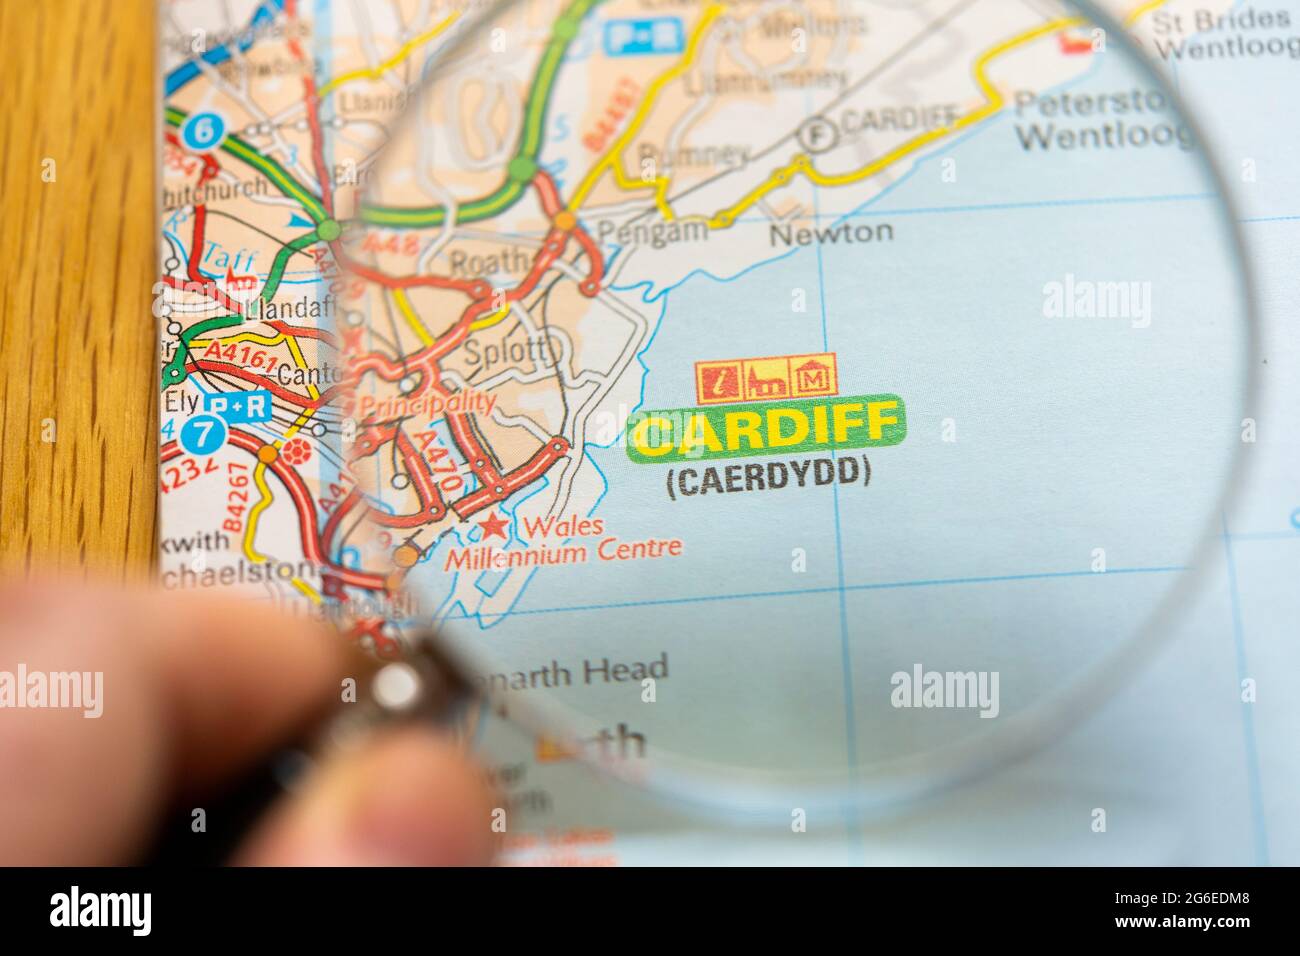 Nahaufnahme einer Seite in einem gedruckten Straßenkarte-Atlas mit einer Männerhand, die eine Lupe mit einer Vergrößerung von Cardiff (Caerdydd) in Wales hält Stockfoto